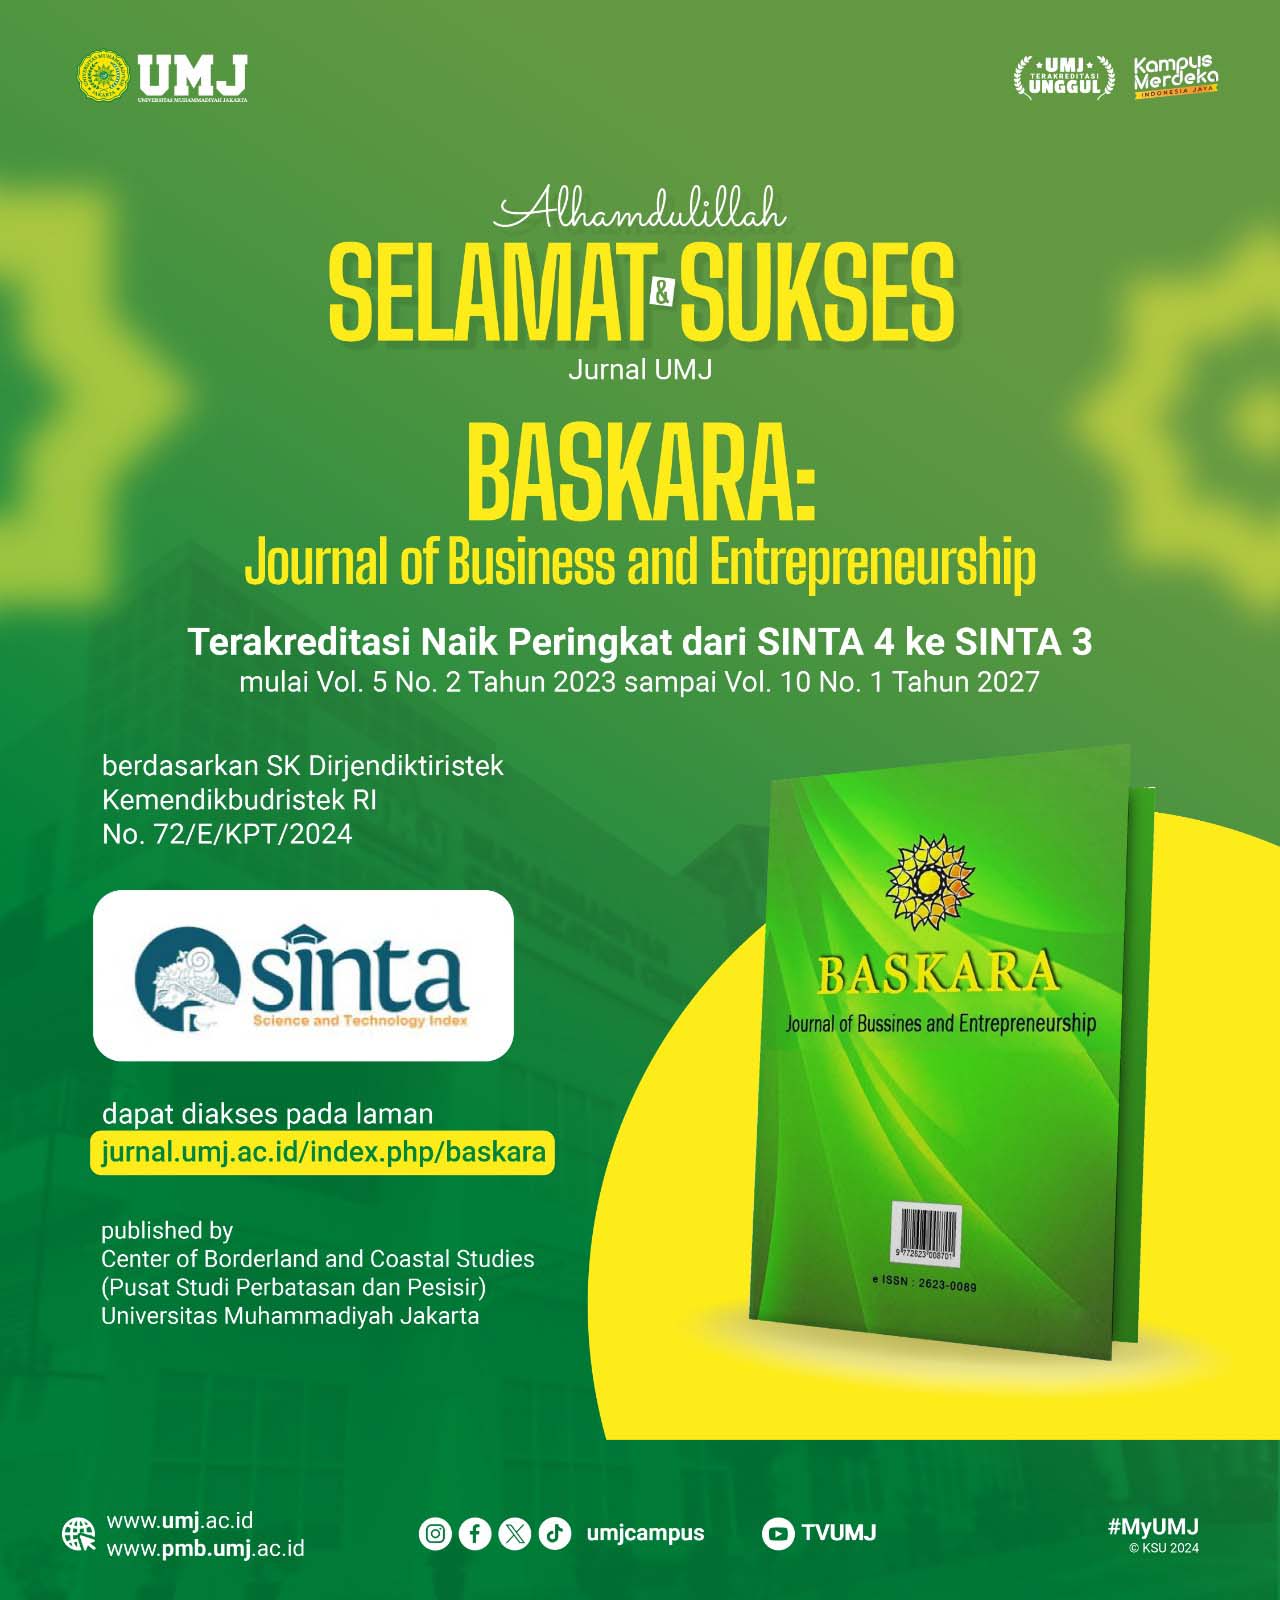 Congratulation BASKARA Journal